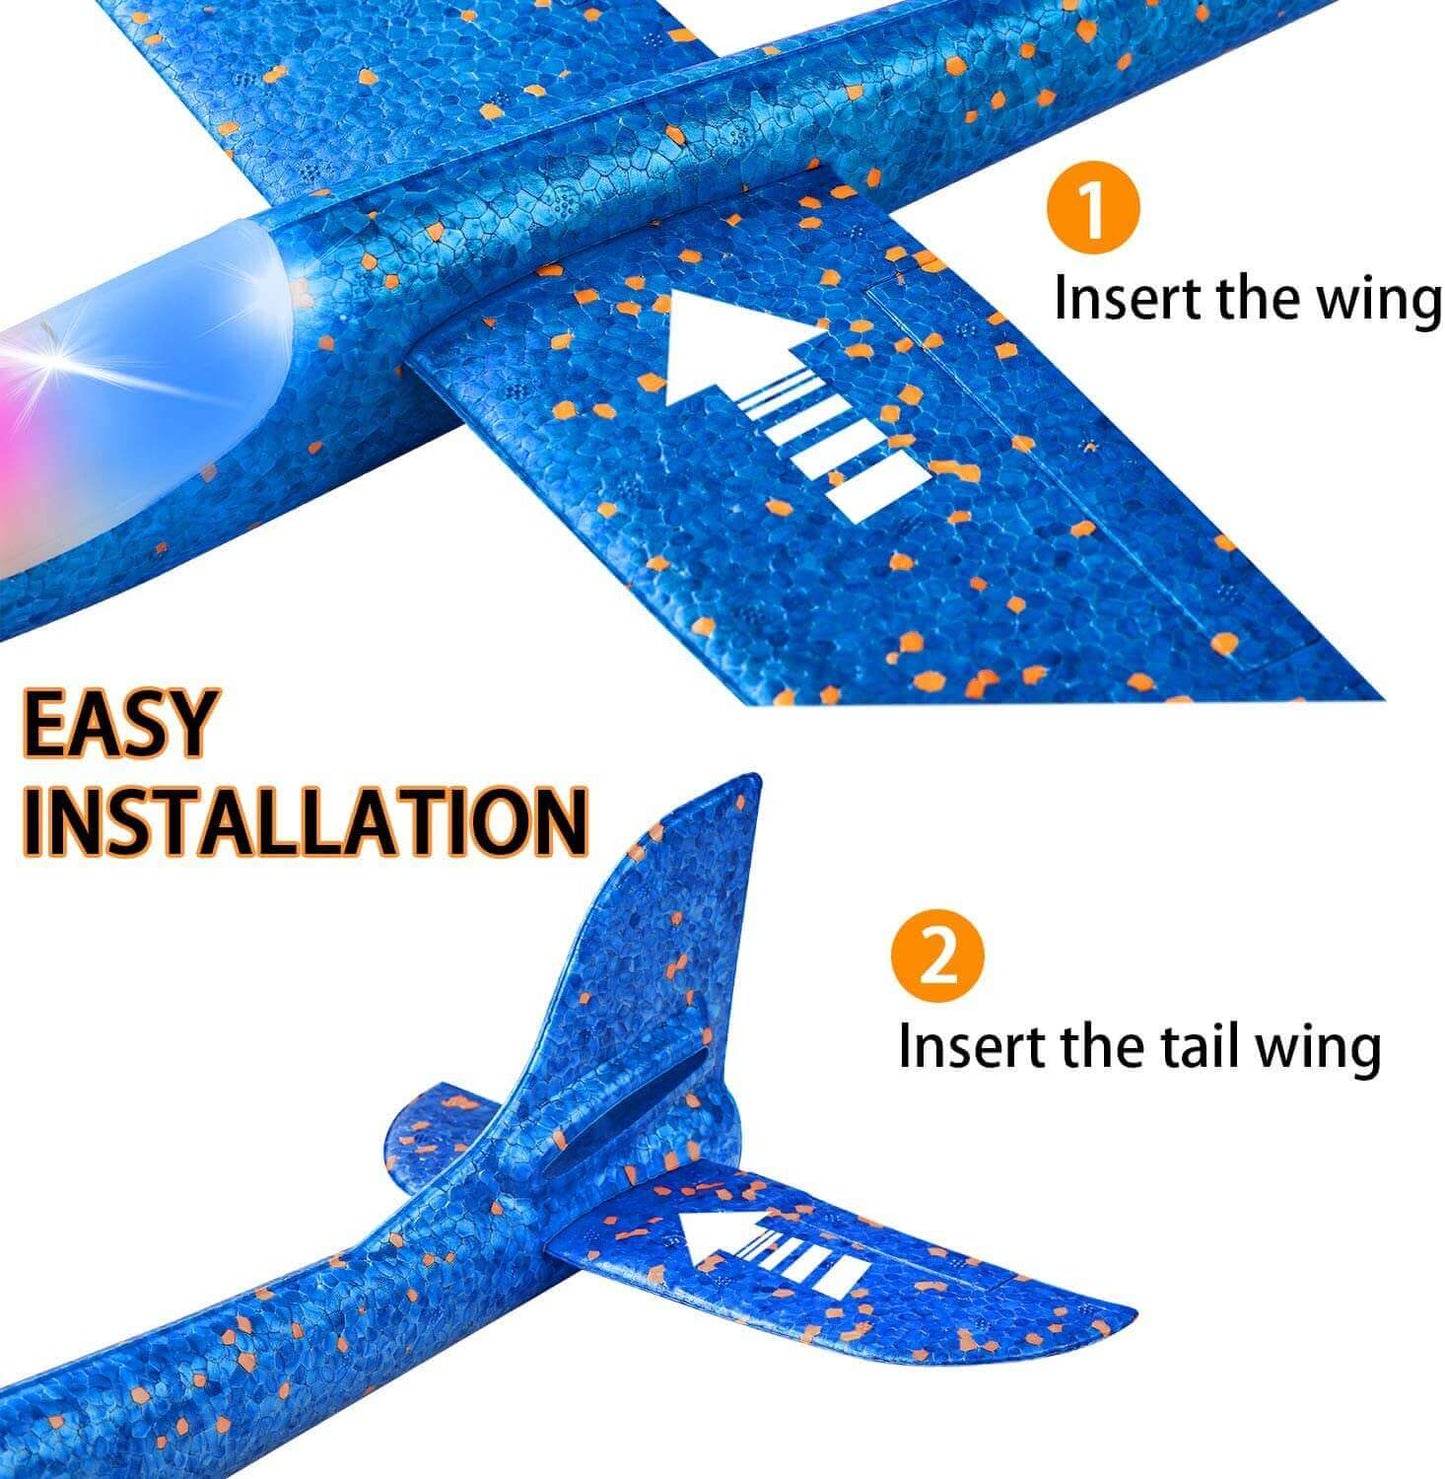 Obtenga el mejor juguete planeador volador para niños: modelo de avión de espuma grande de 50 cm con luz LED y lanzamiento manual para diversión y juegos al aire libre